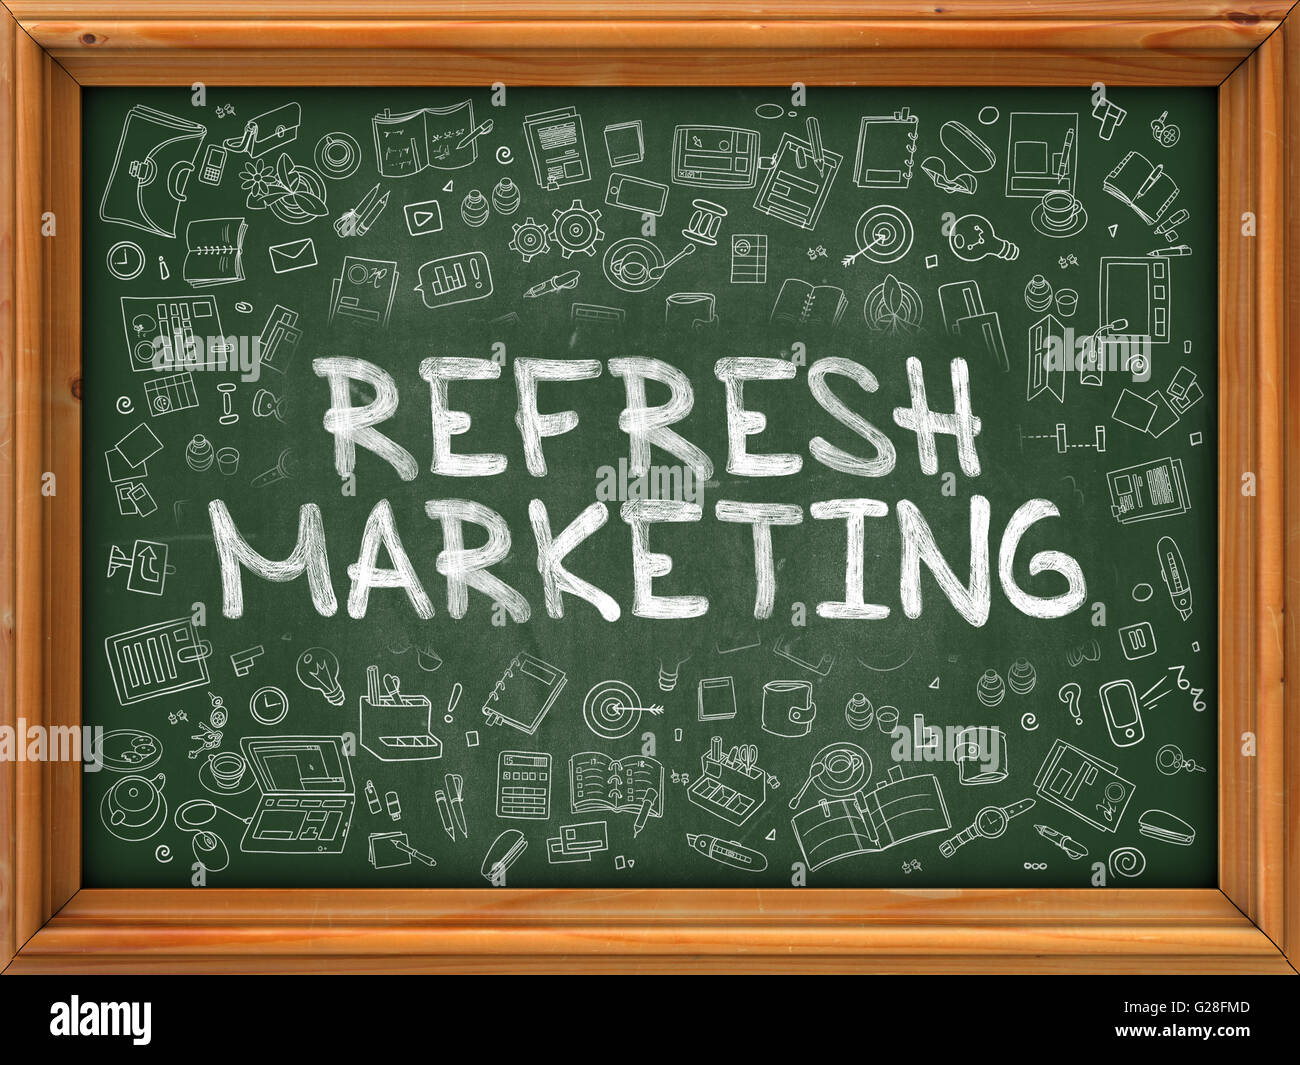 Aktualisieren Sie Marketing - Hand auf grüne Tafel gezeichnet. Stockfoto